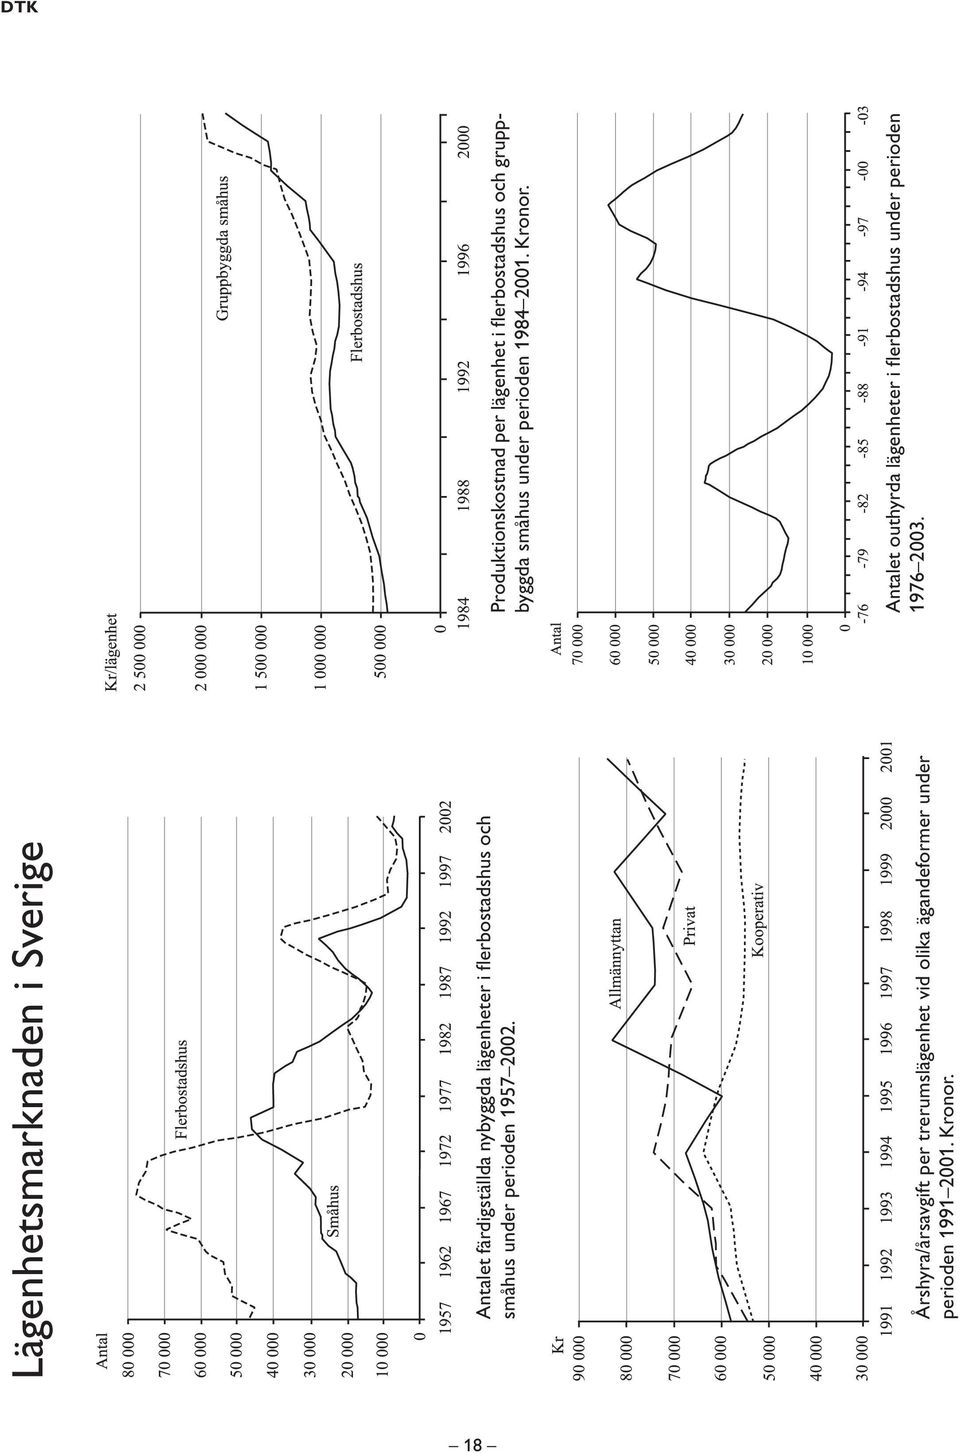 Årshyra/årsavgift per trerumslägenhet vid olika ägandeformer under perioden 1991 2001. Kronor.